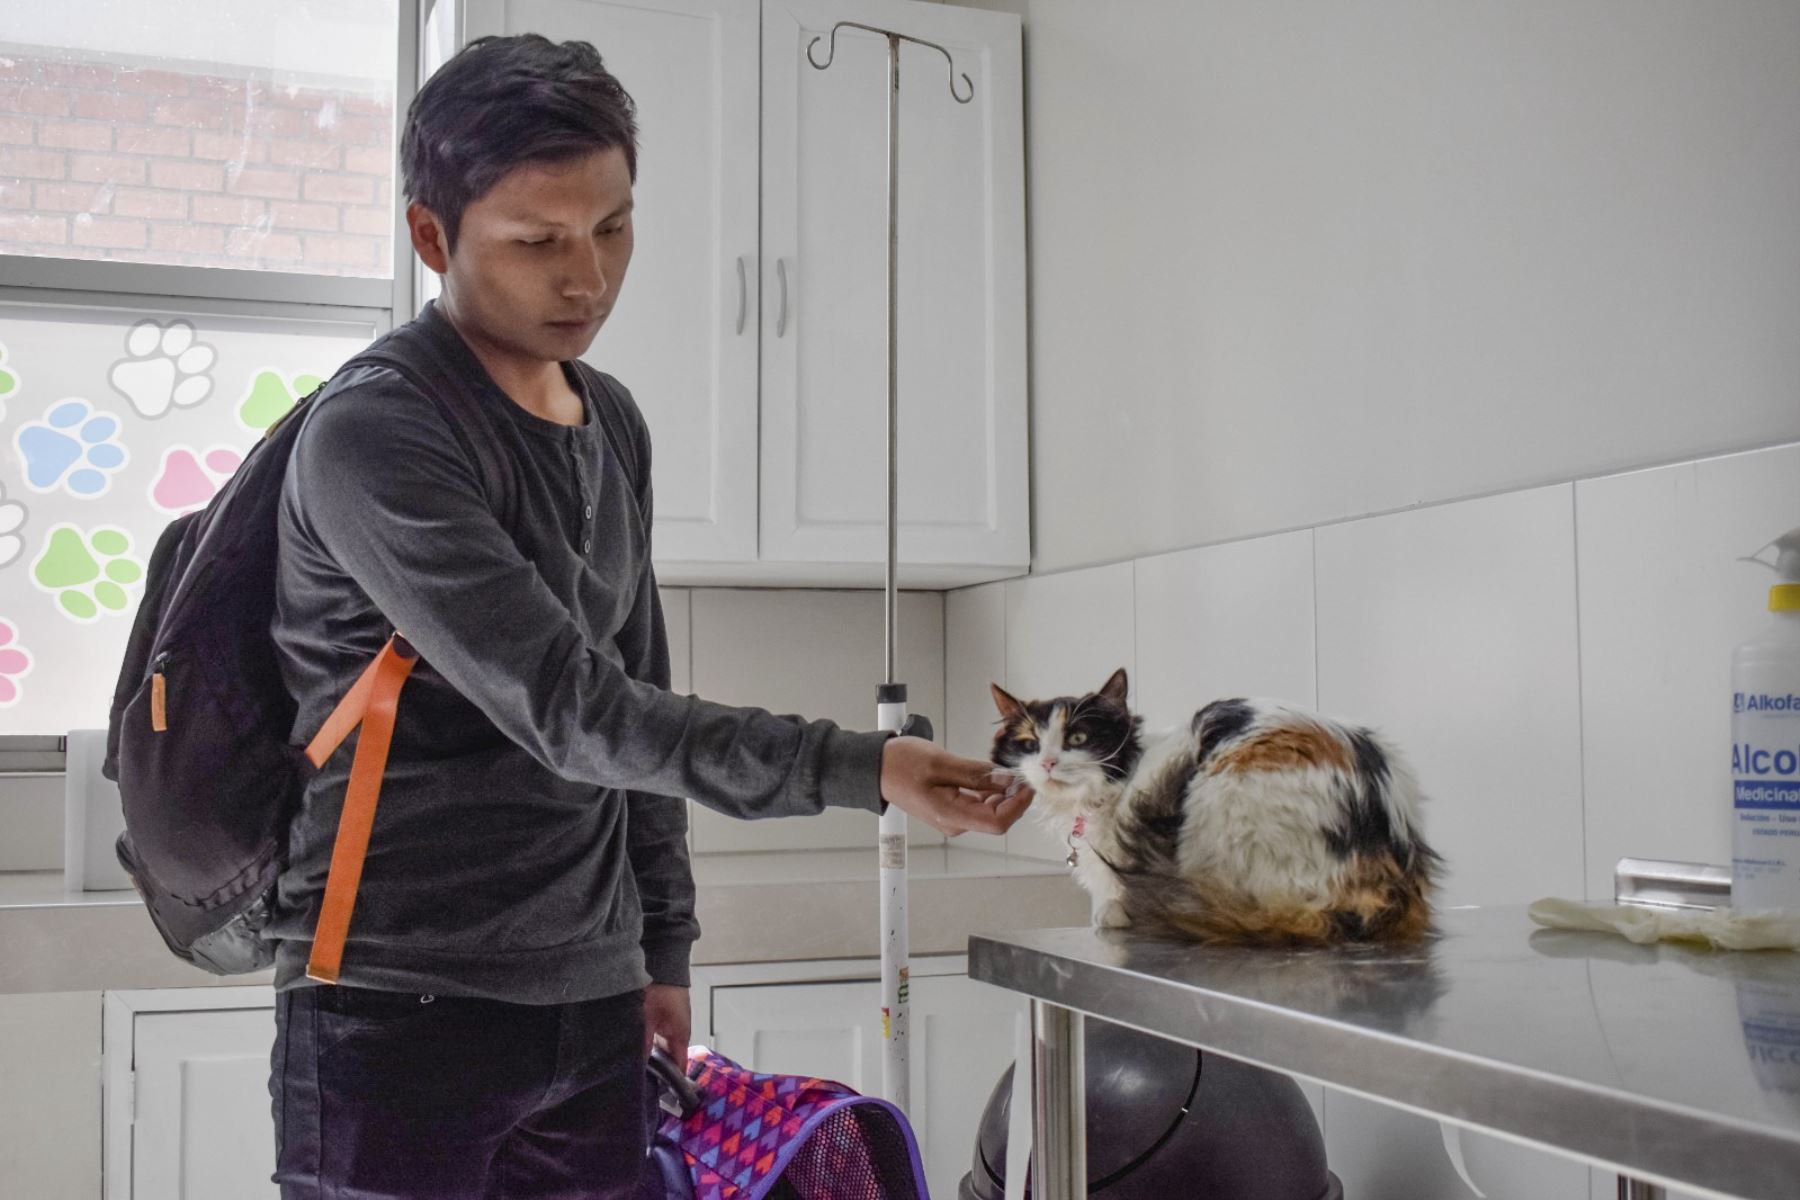 La Municipalidad Provincial de Huancayo proyecta ejecutar doce campañas gratuitas de esterilización de gatos y perros durante el año. Foto: ANDINA/Difusión